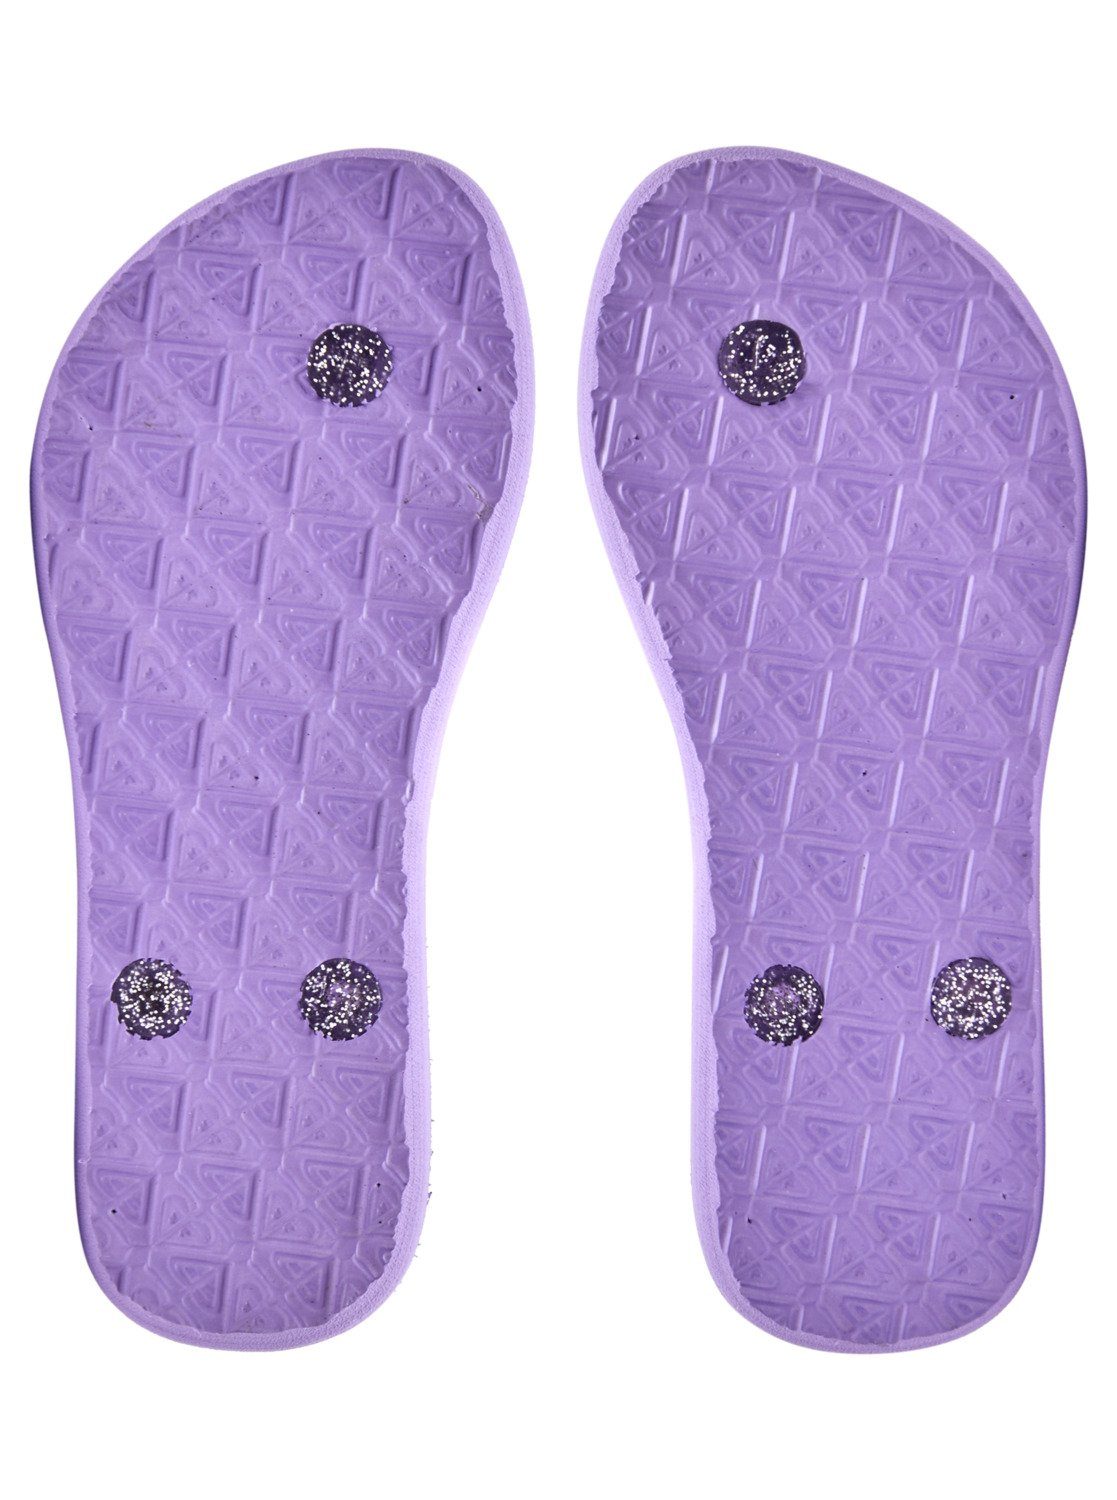 Sandale Viva Sparkle Roxy Purple Heather